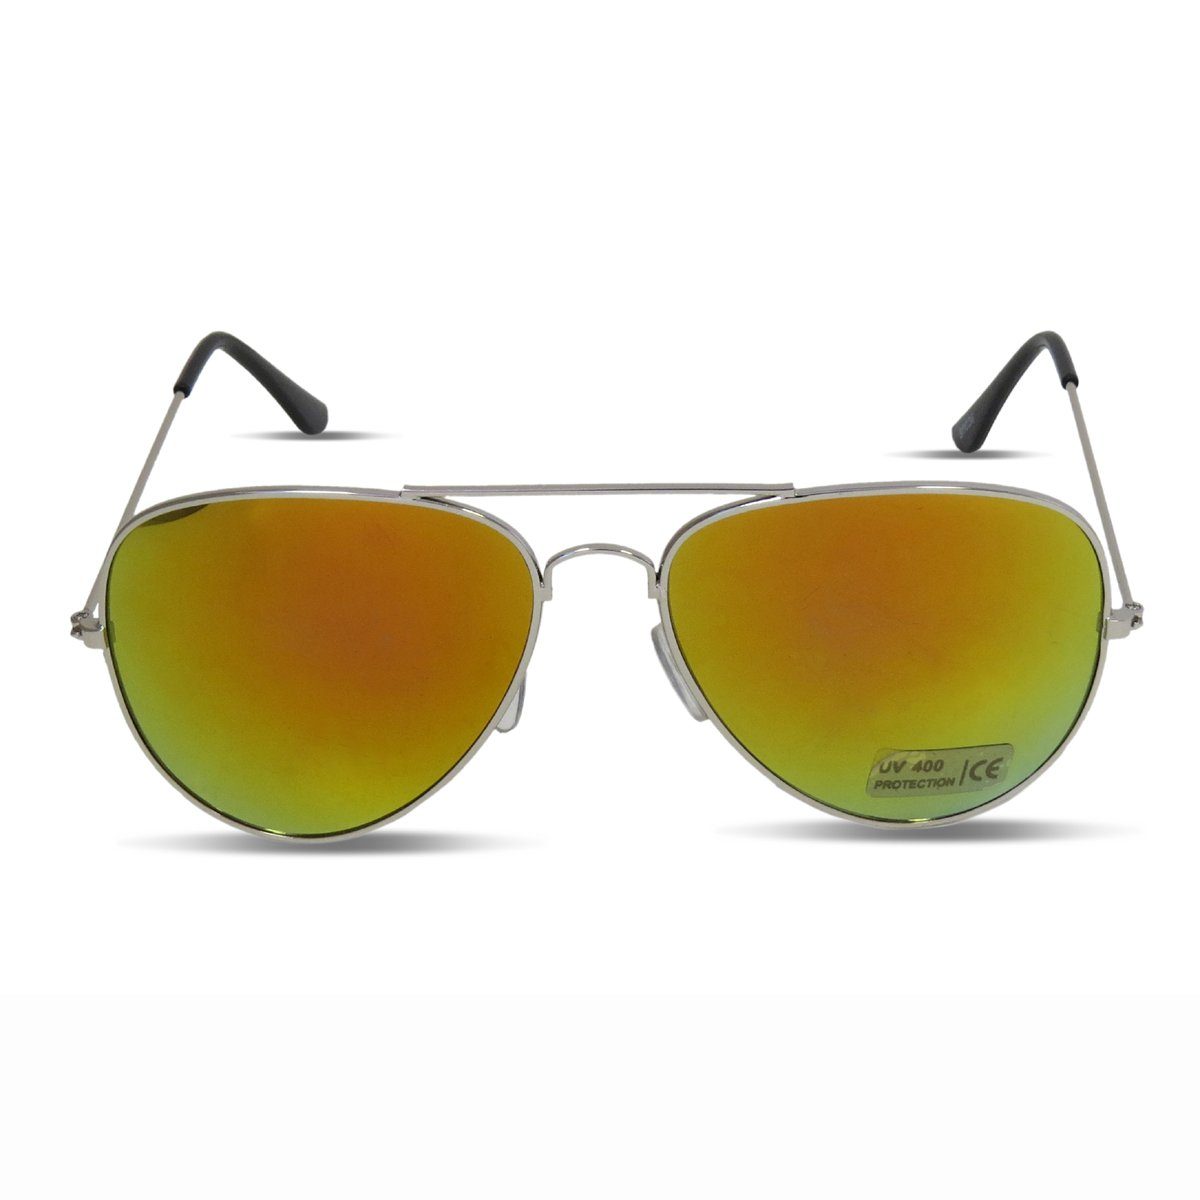 Sonia Originelli Sonnenbrille Sonnenbrille "Pilot" Partybrille Spaß Verspiegelt Brille Fasching Onesize gelb